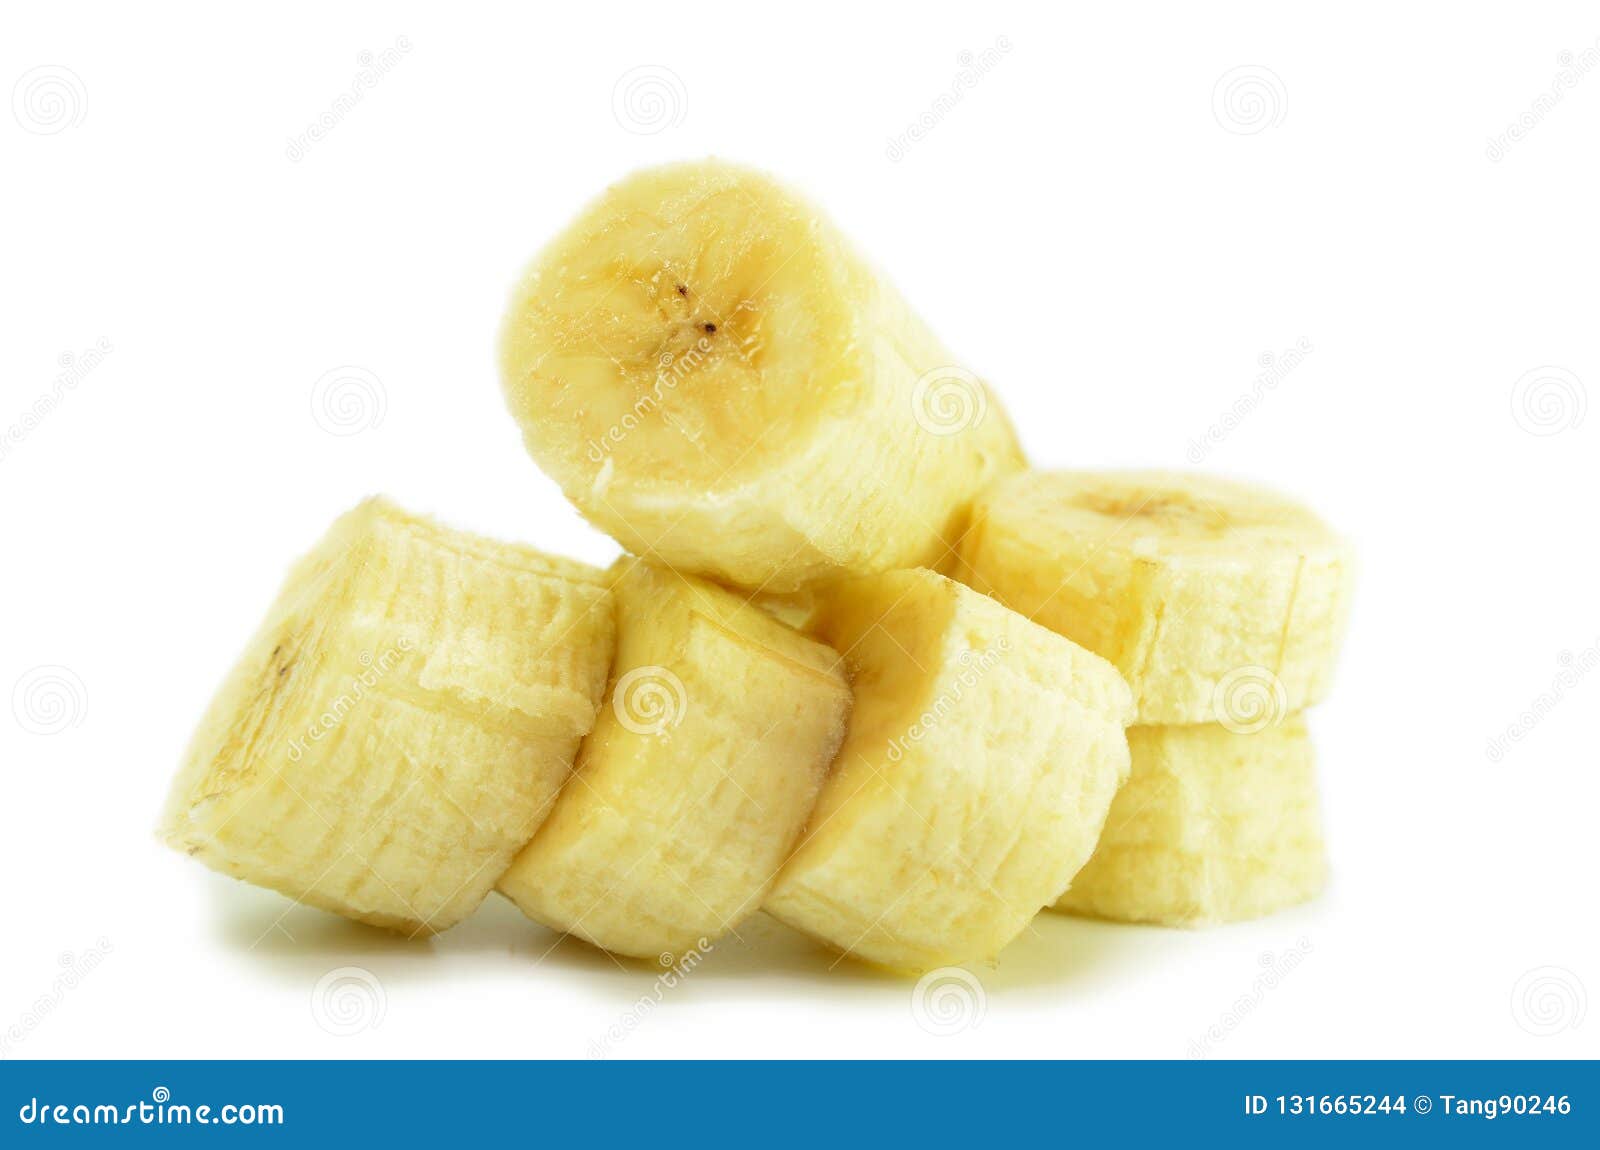 现货批发 香蕉切片器 水果刀 香蕉切-阿里巴巴